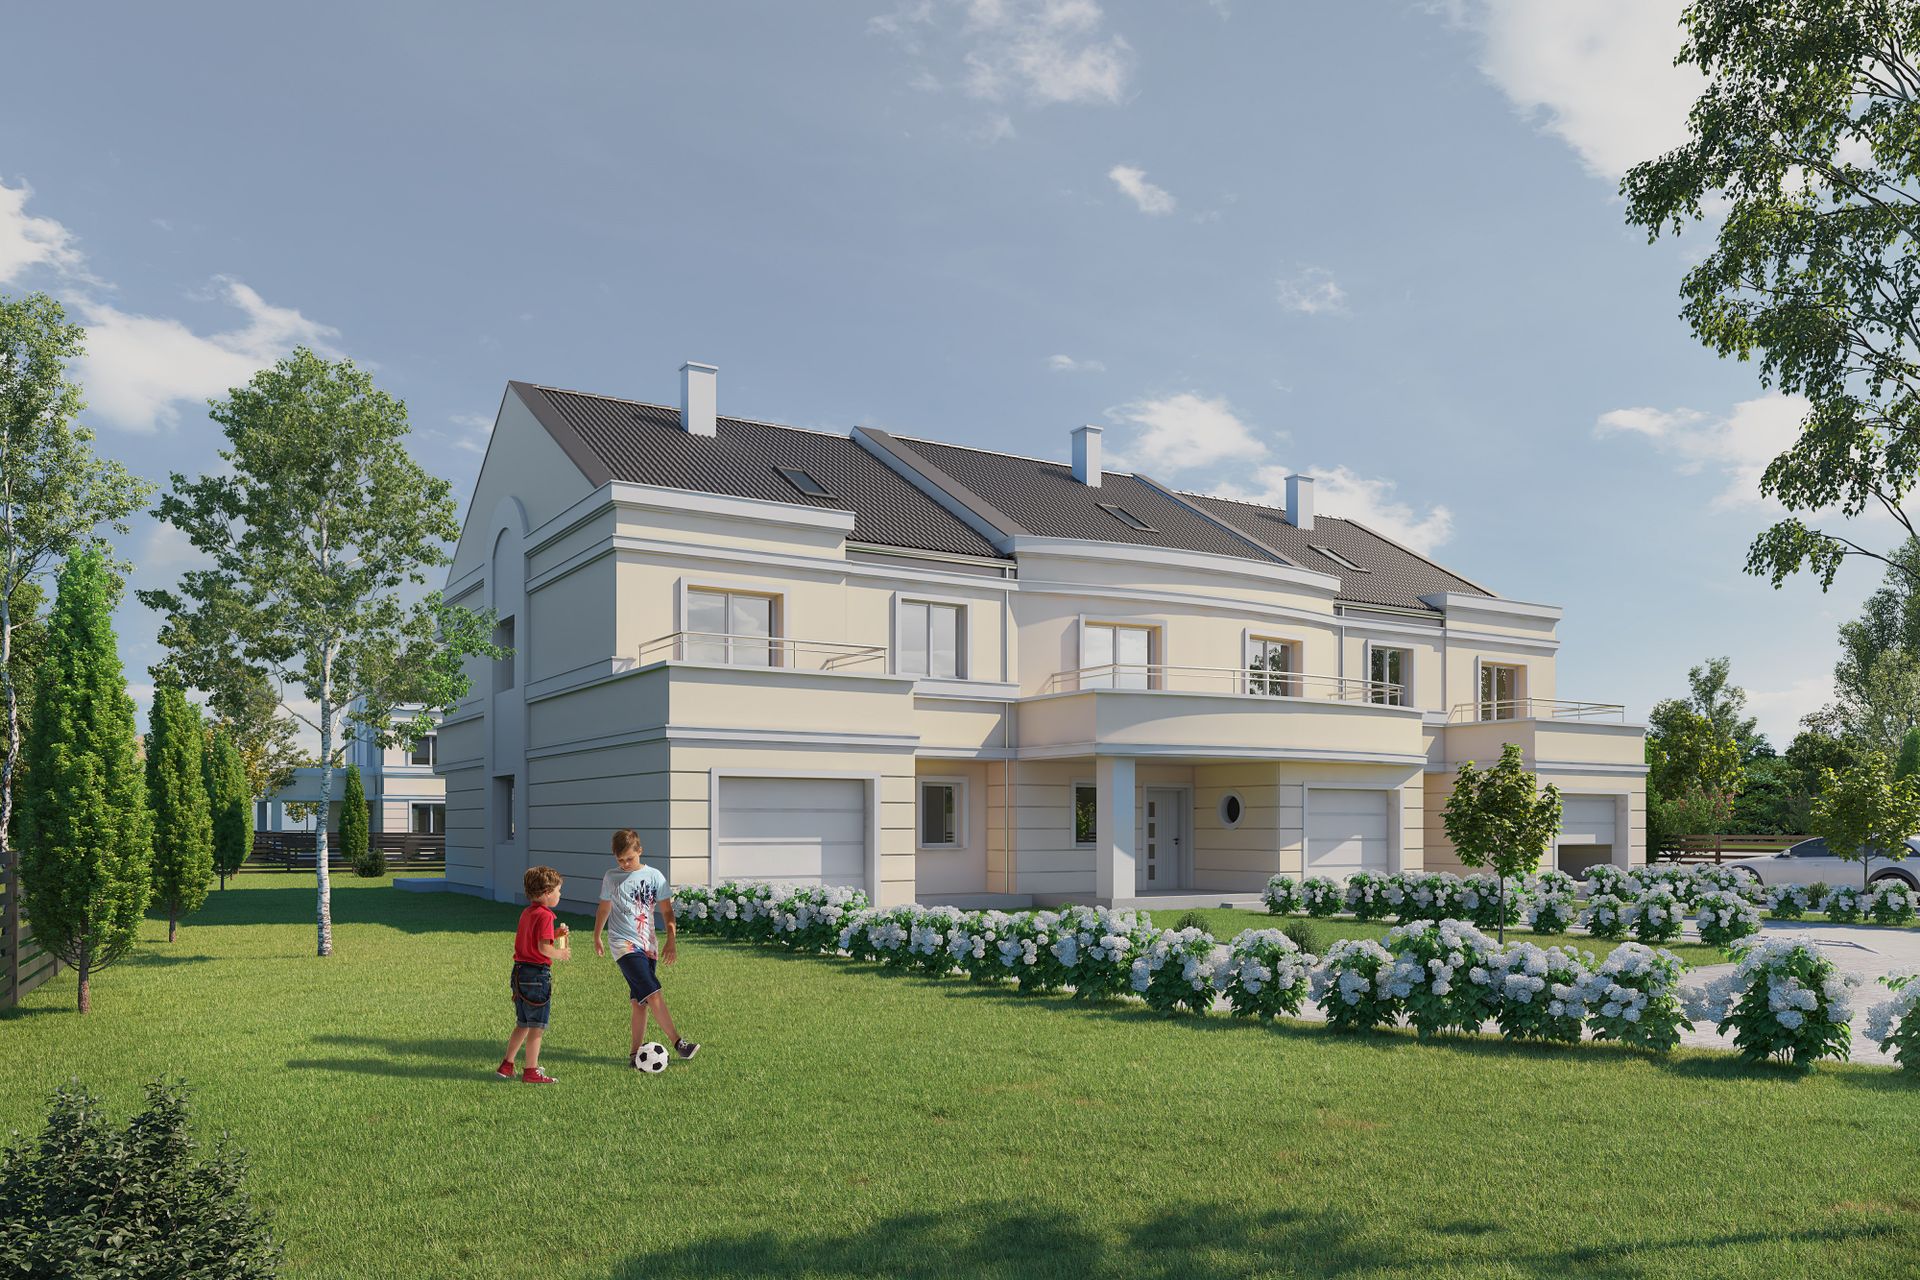 Wrocław: Villa Elegante – Comodomo buduje na Wojszycach wille inspirowane architekturą południa 